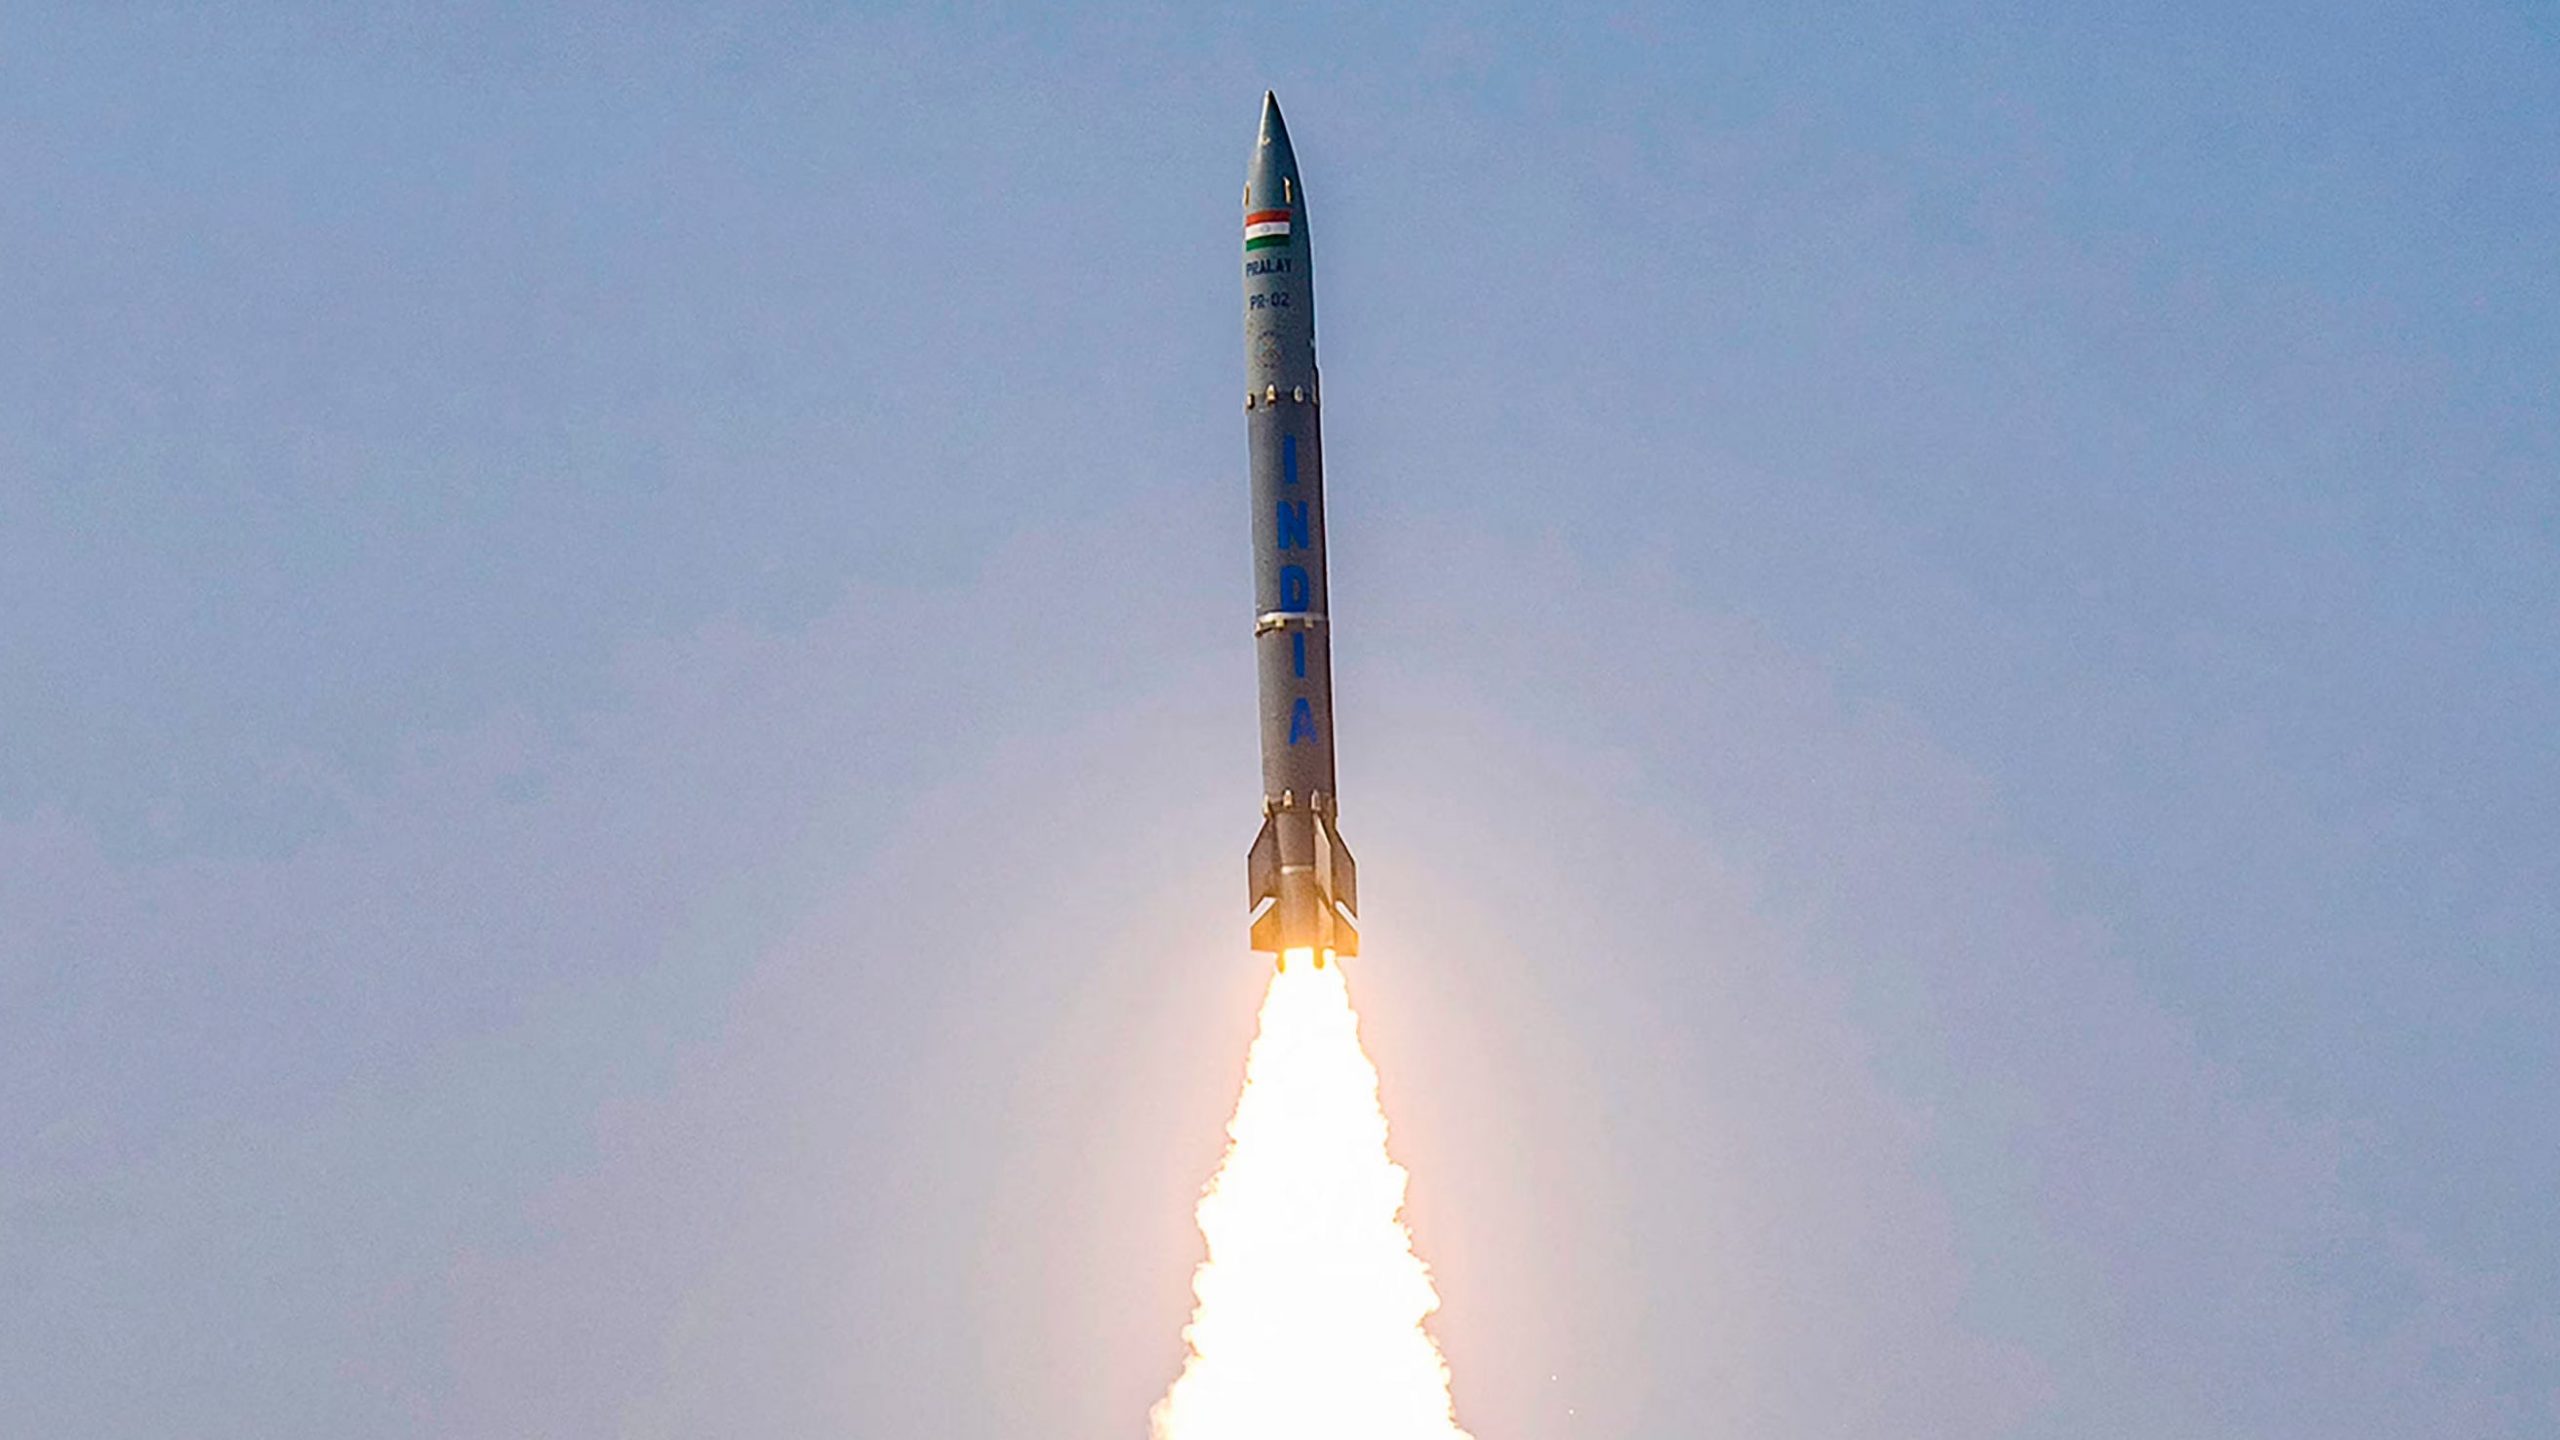 भारत के दुश्मनों के लिए काल है प्रलय मिसाइल, DRDO ने किया सफल परिक्षण, जानें इसके बारे में सबकुछ